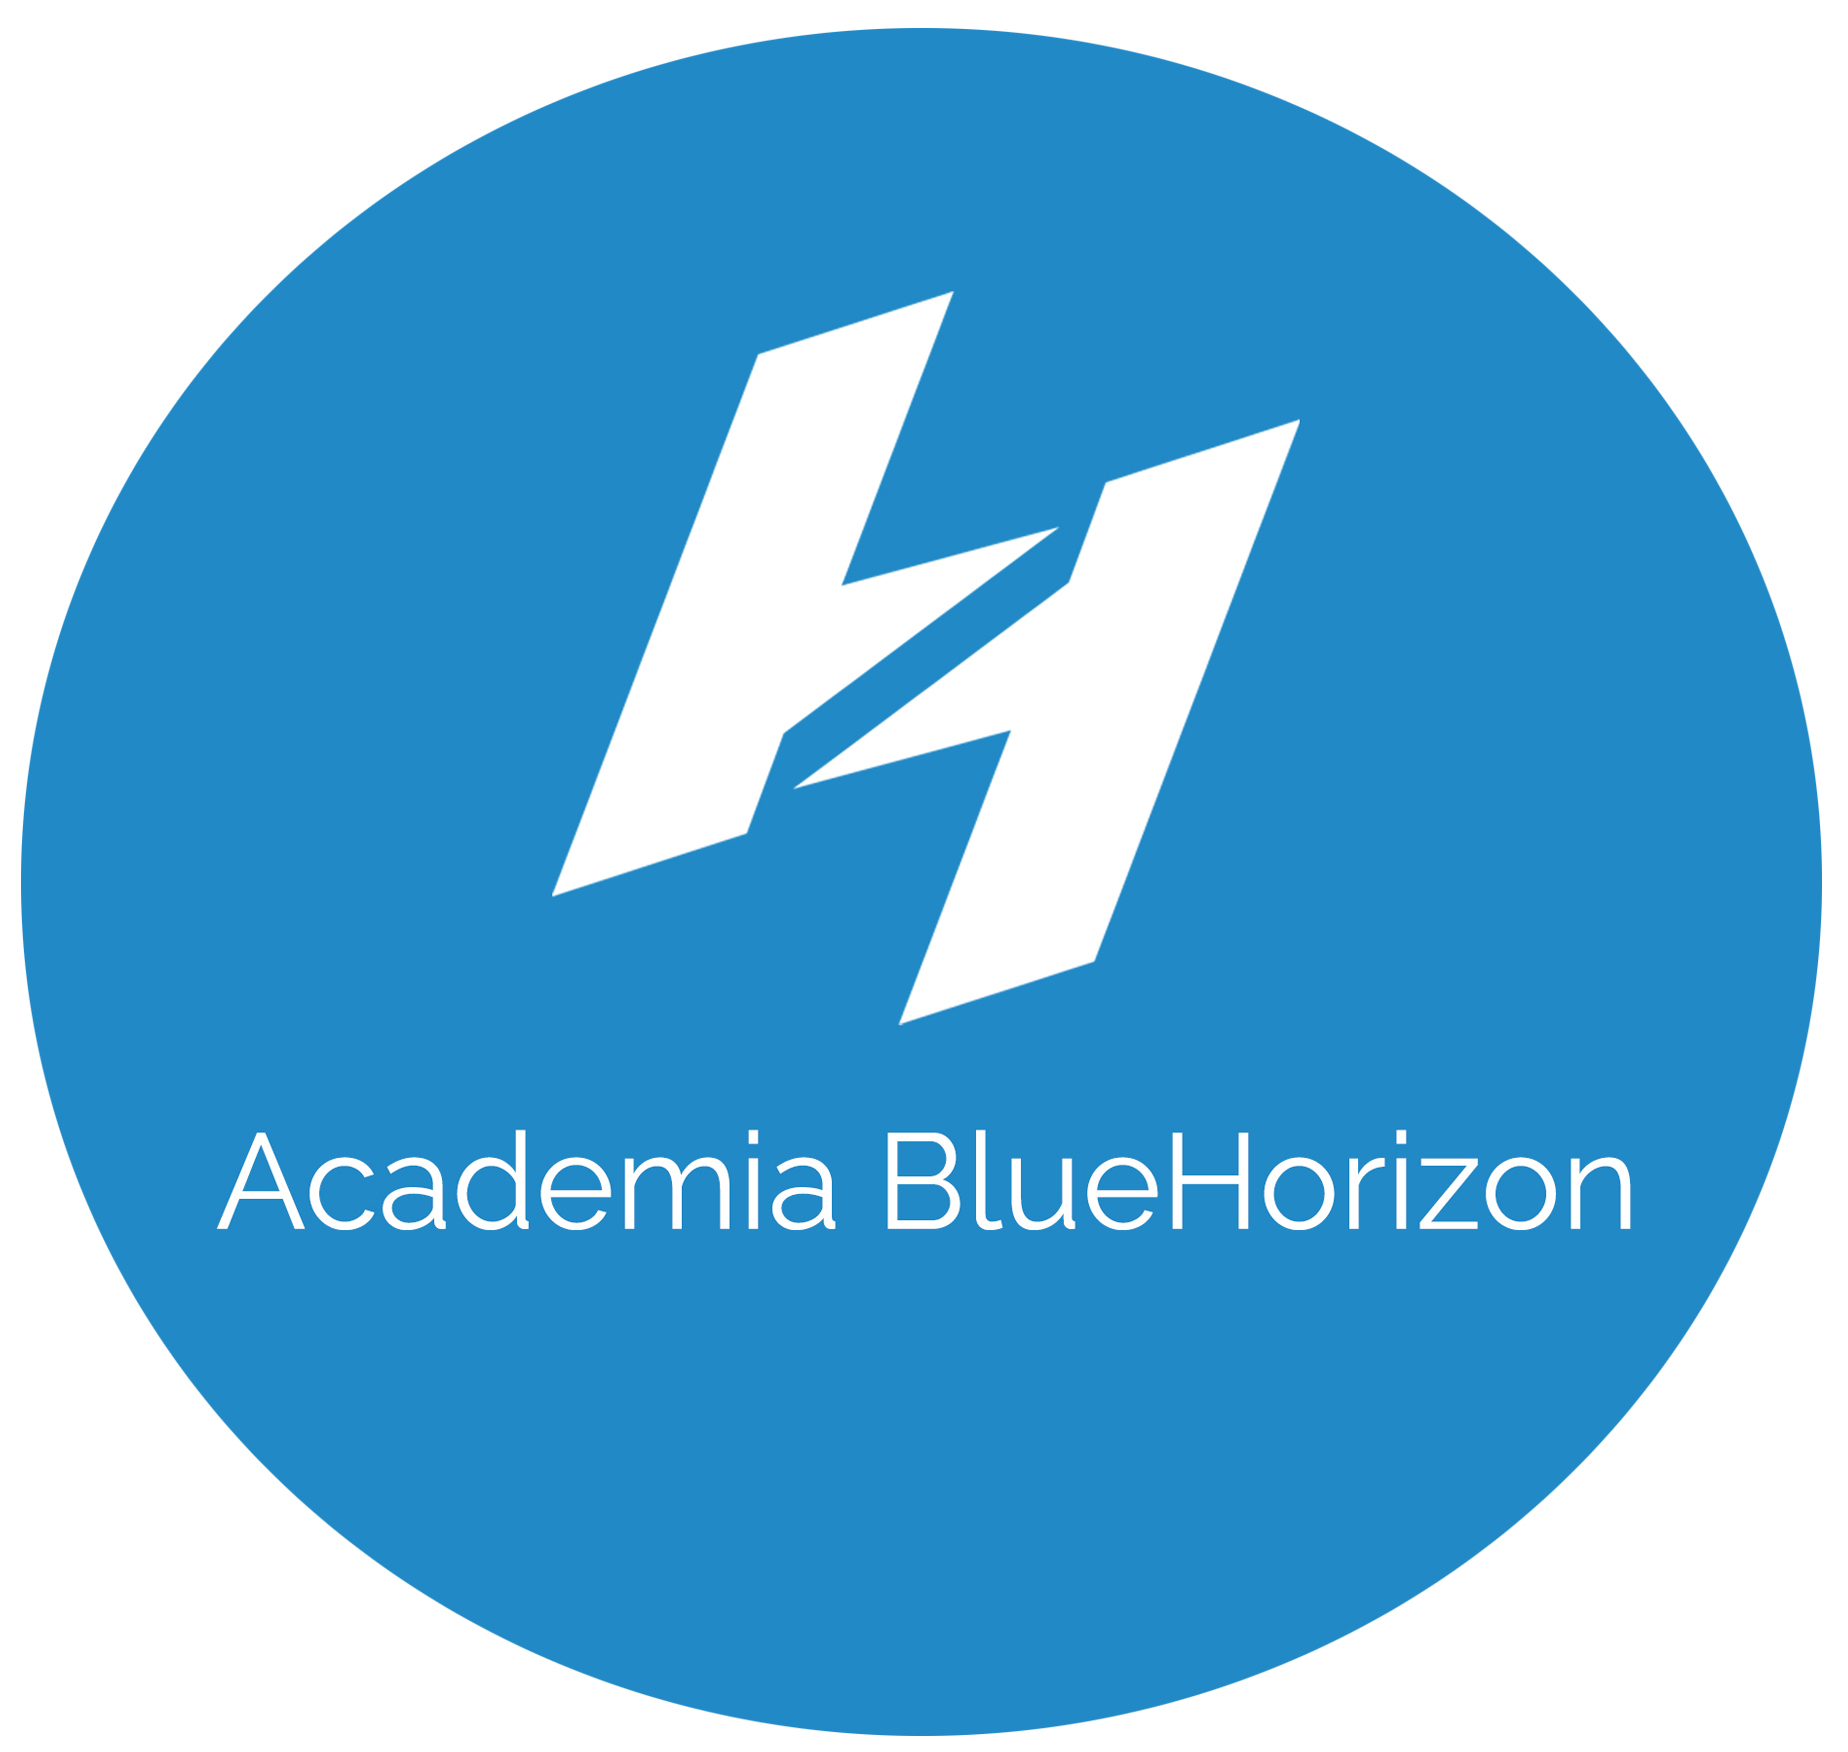 Academia Blue Horizon